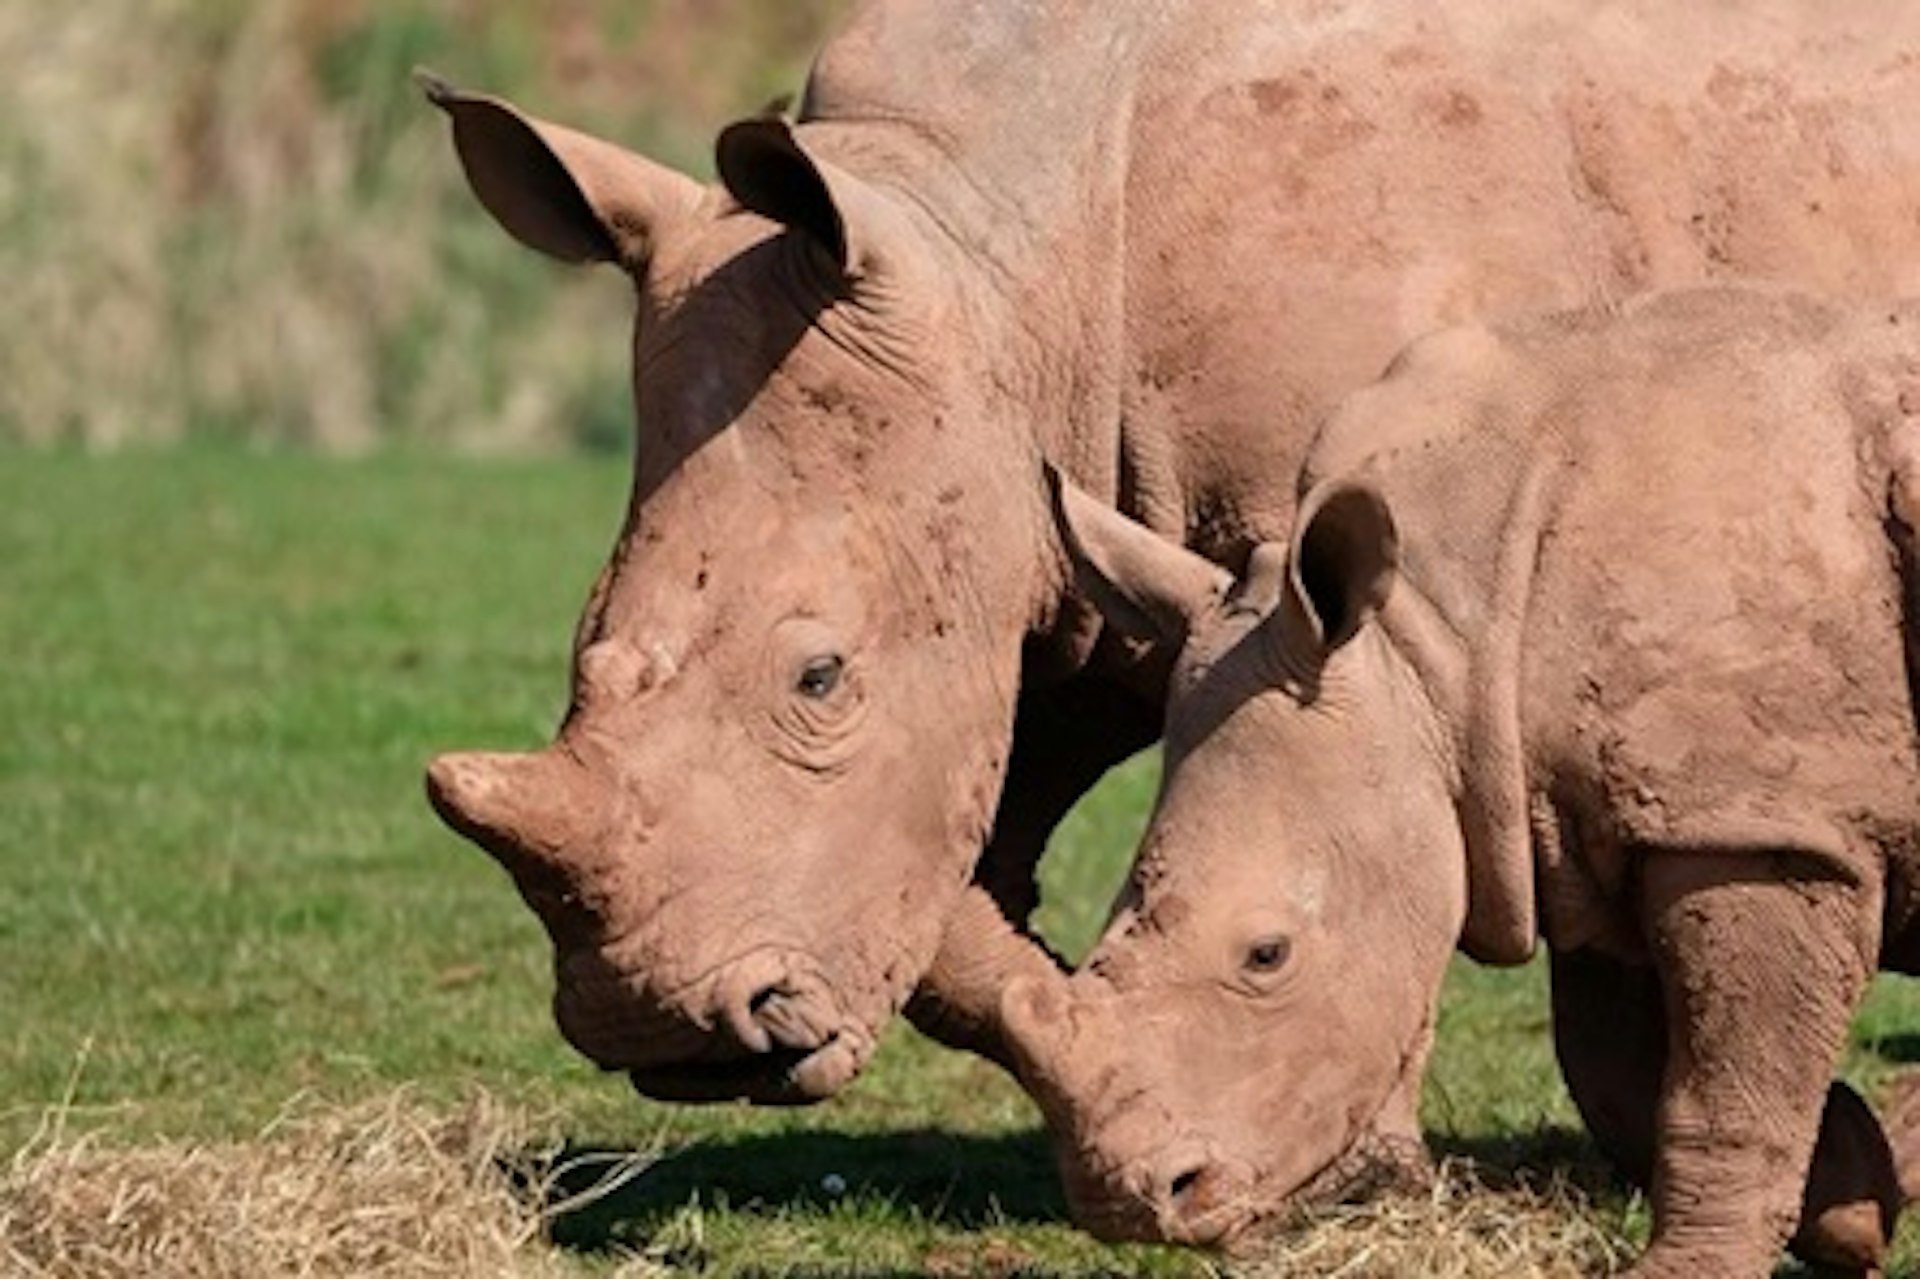 White Rhino Encounter with Day Admission to South Lakes Safari Zoo 1